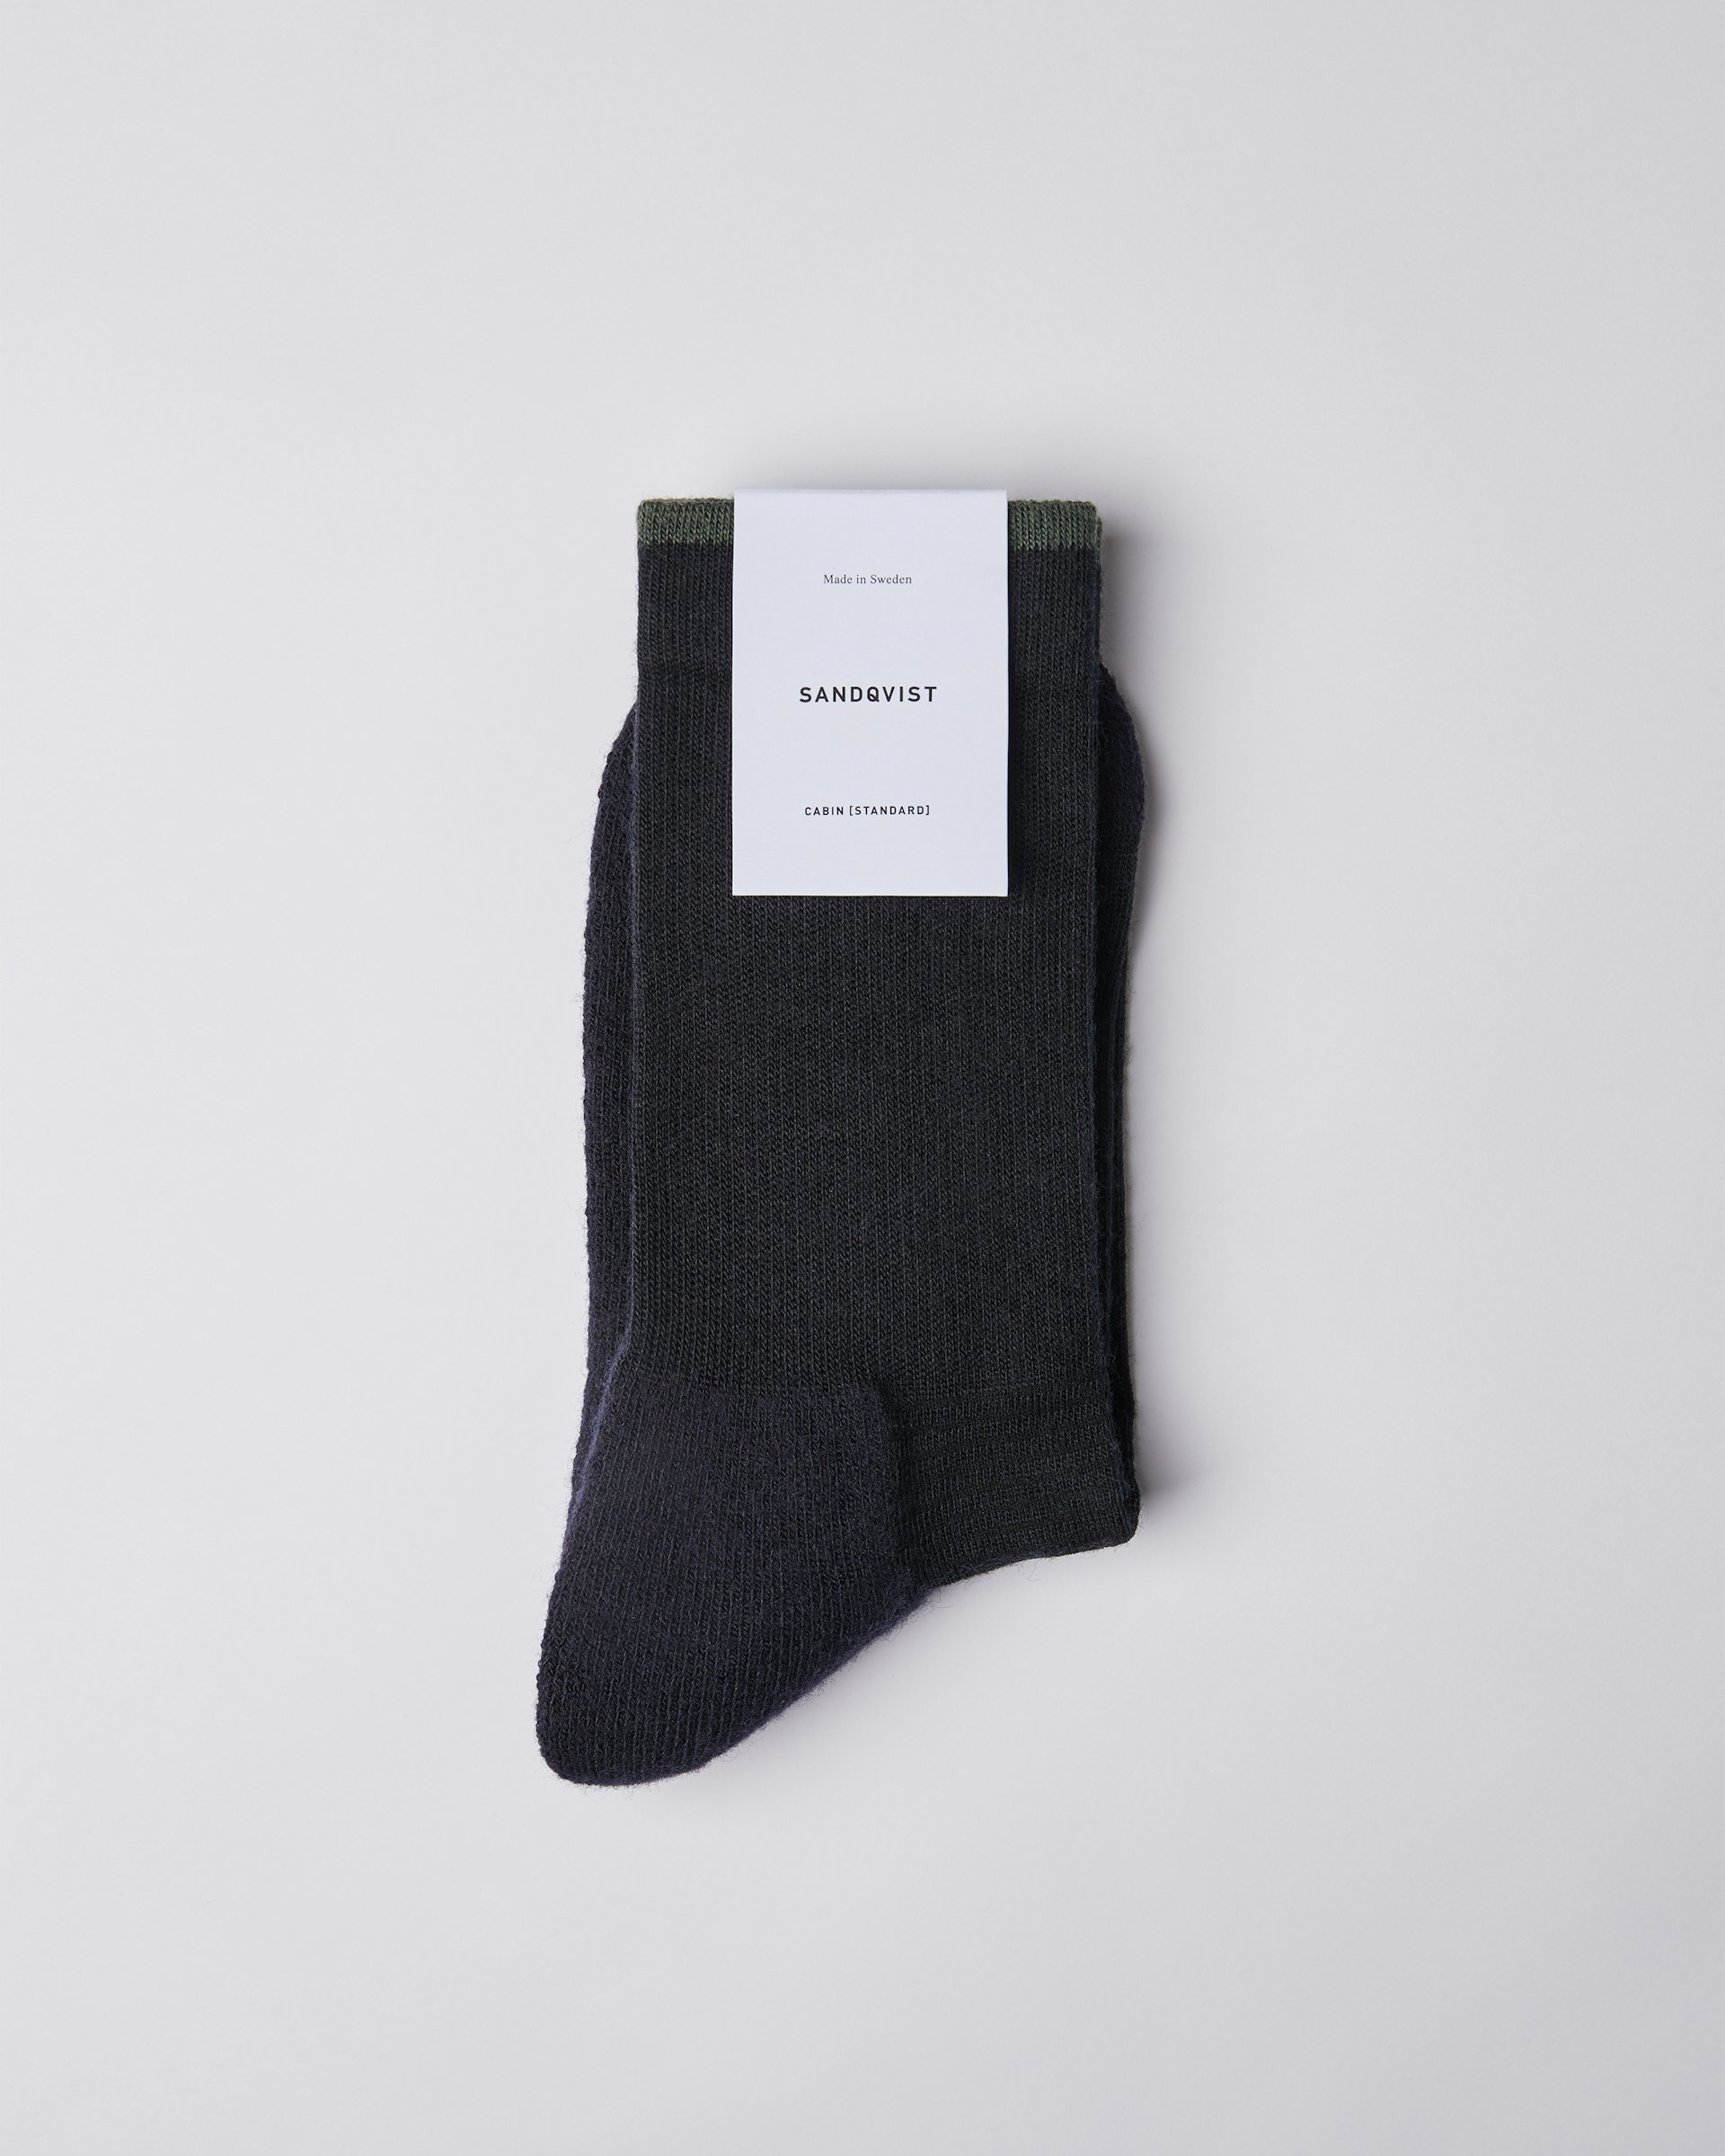 Wool Sock is in color black